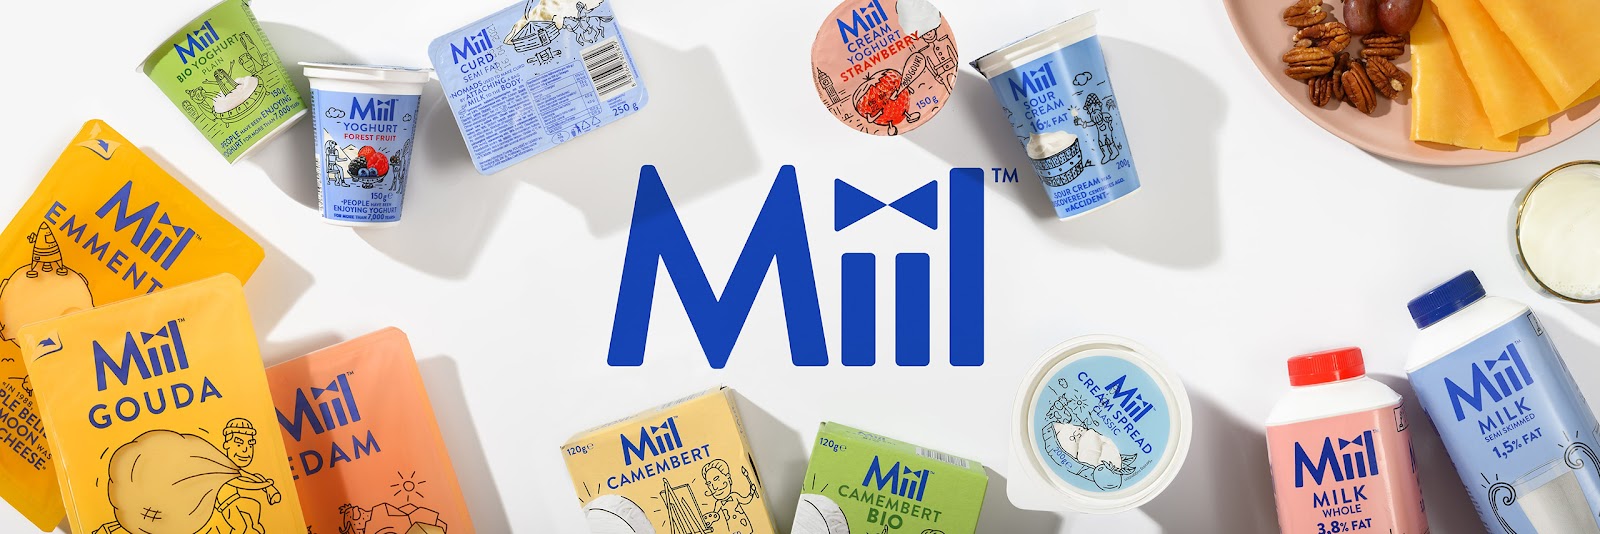 国外精美的Miil乳制品包装设计作品欣赏。